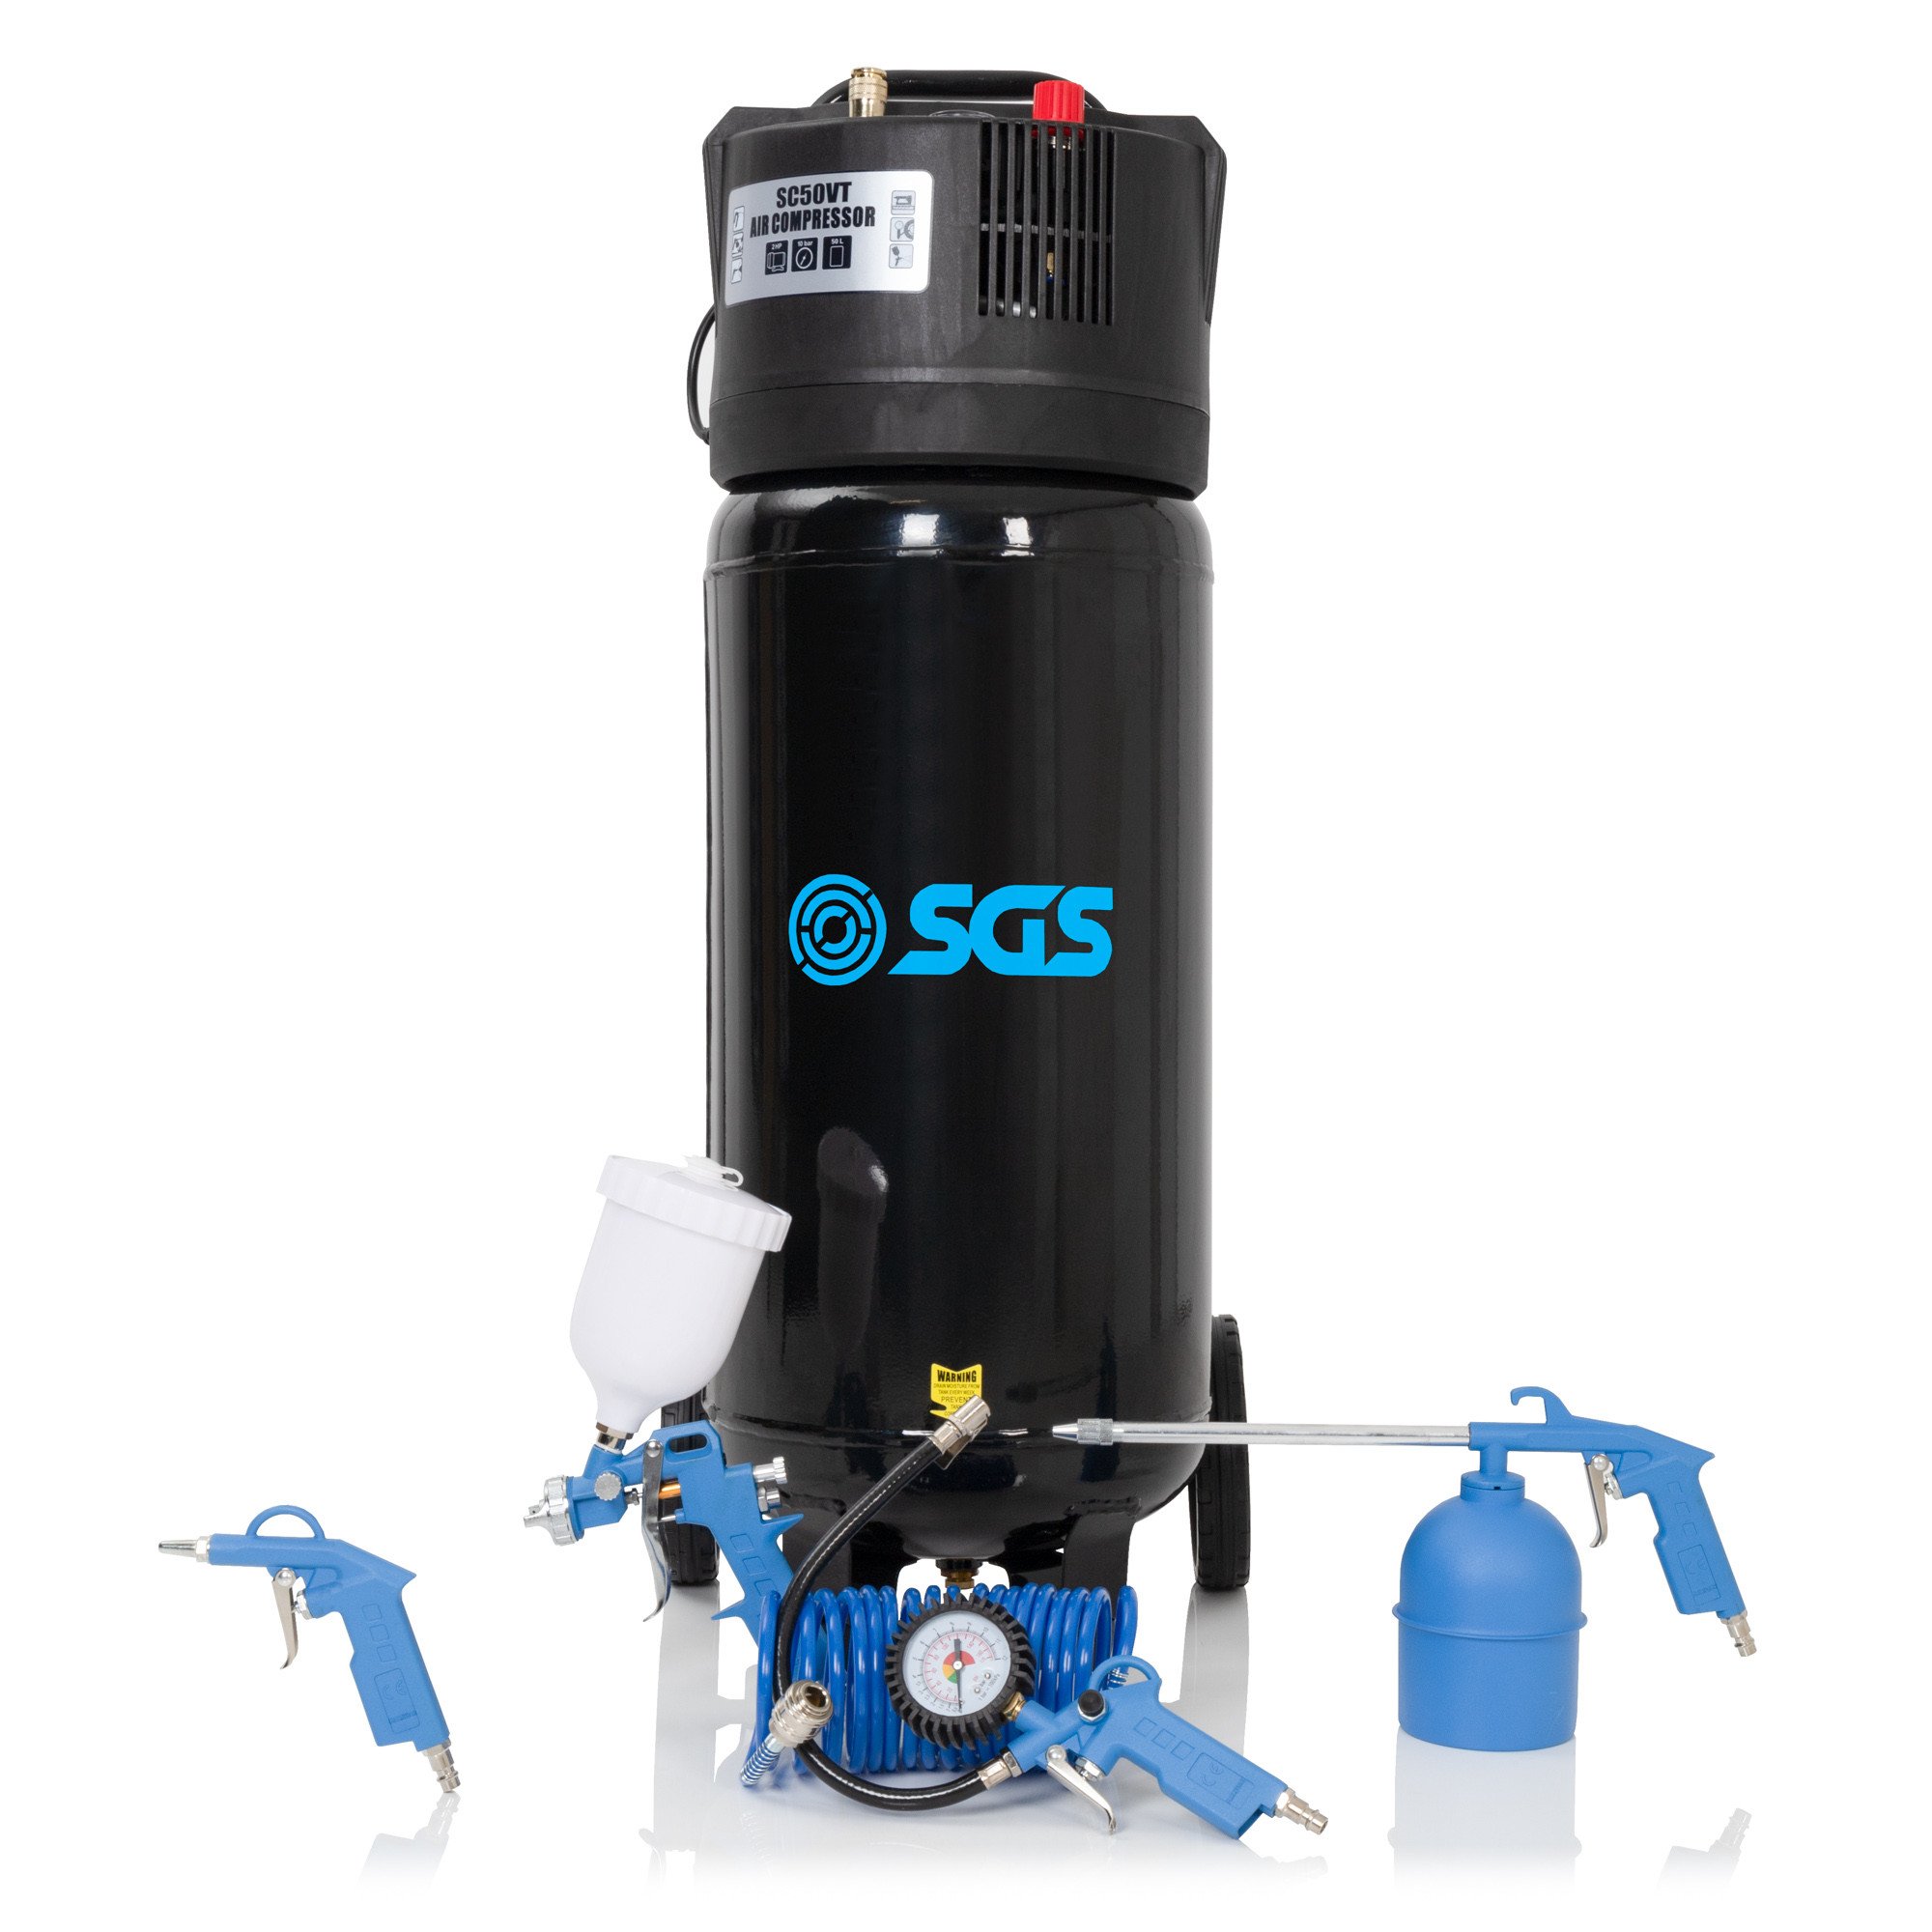 SGS 50升直接驱动垂直空气压缩机用5块工具包